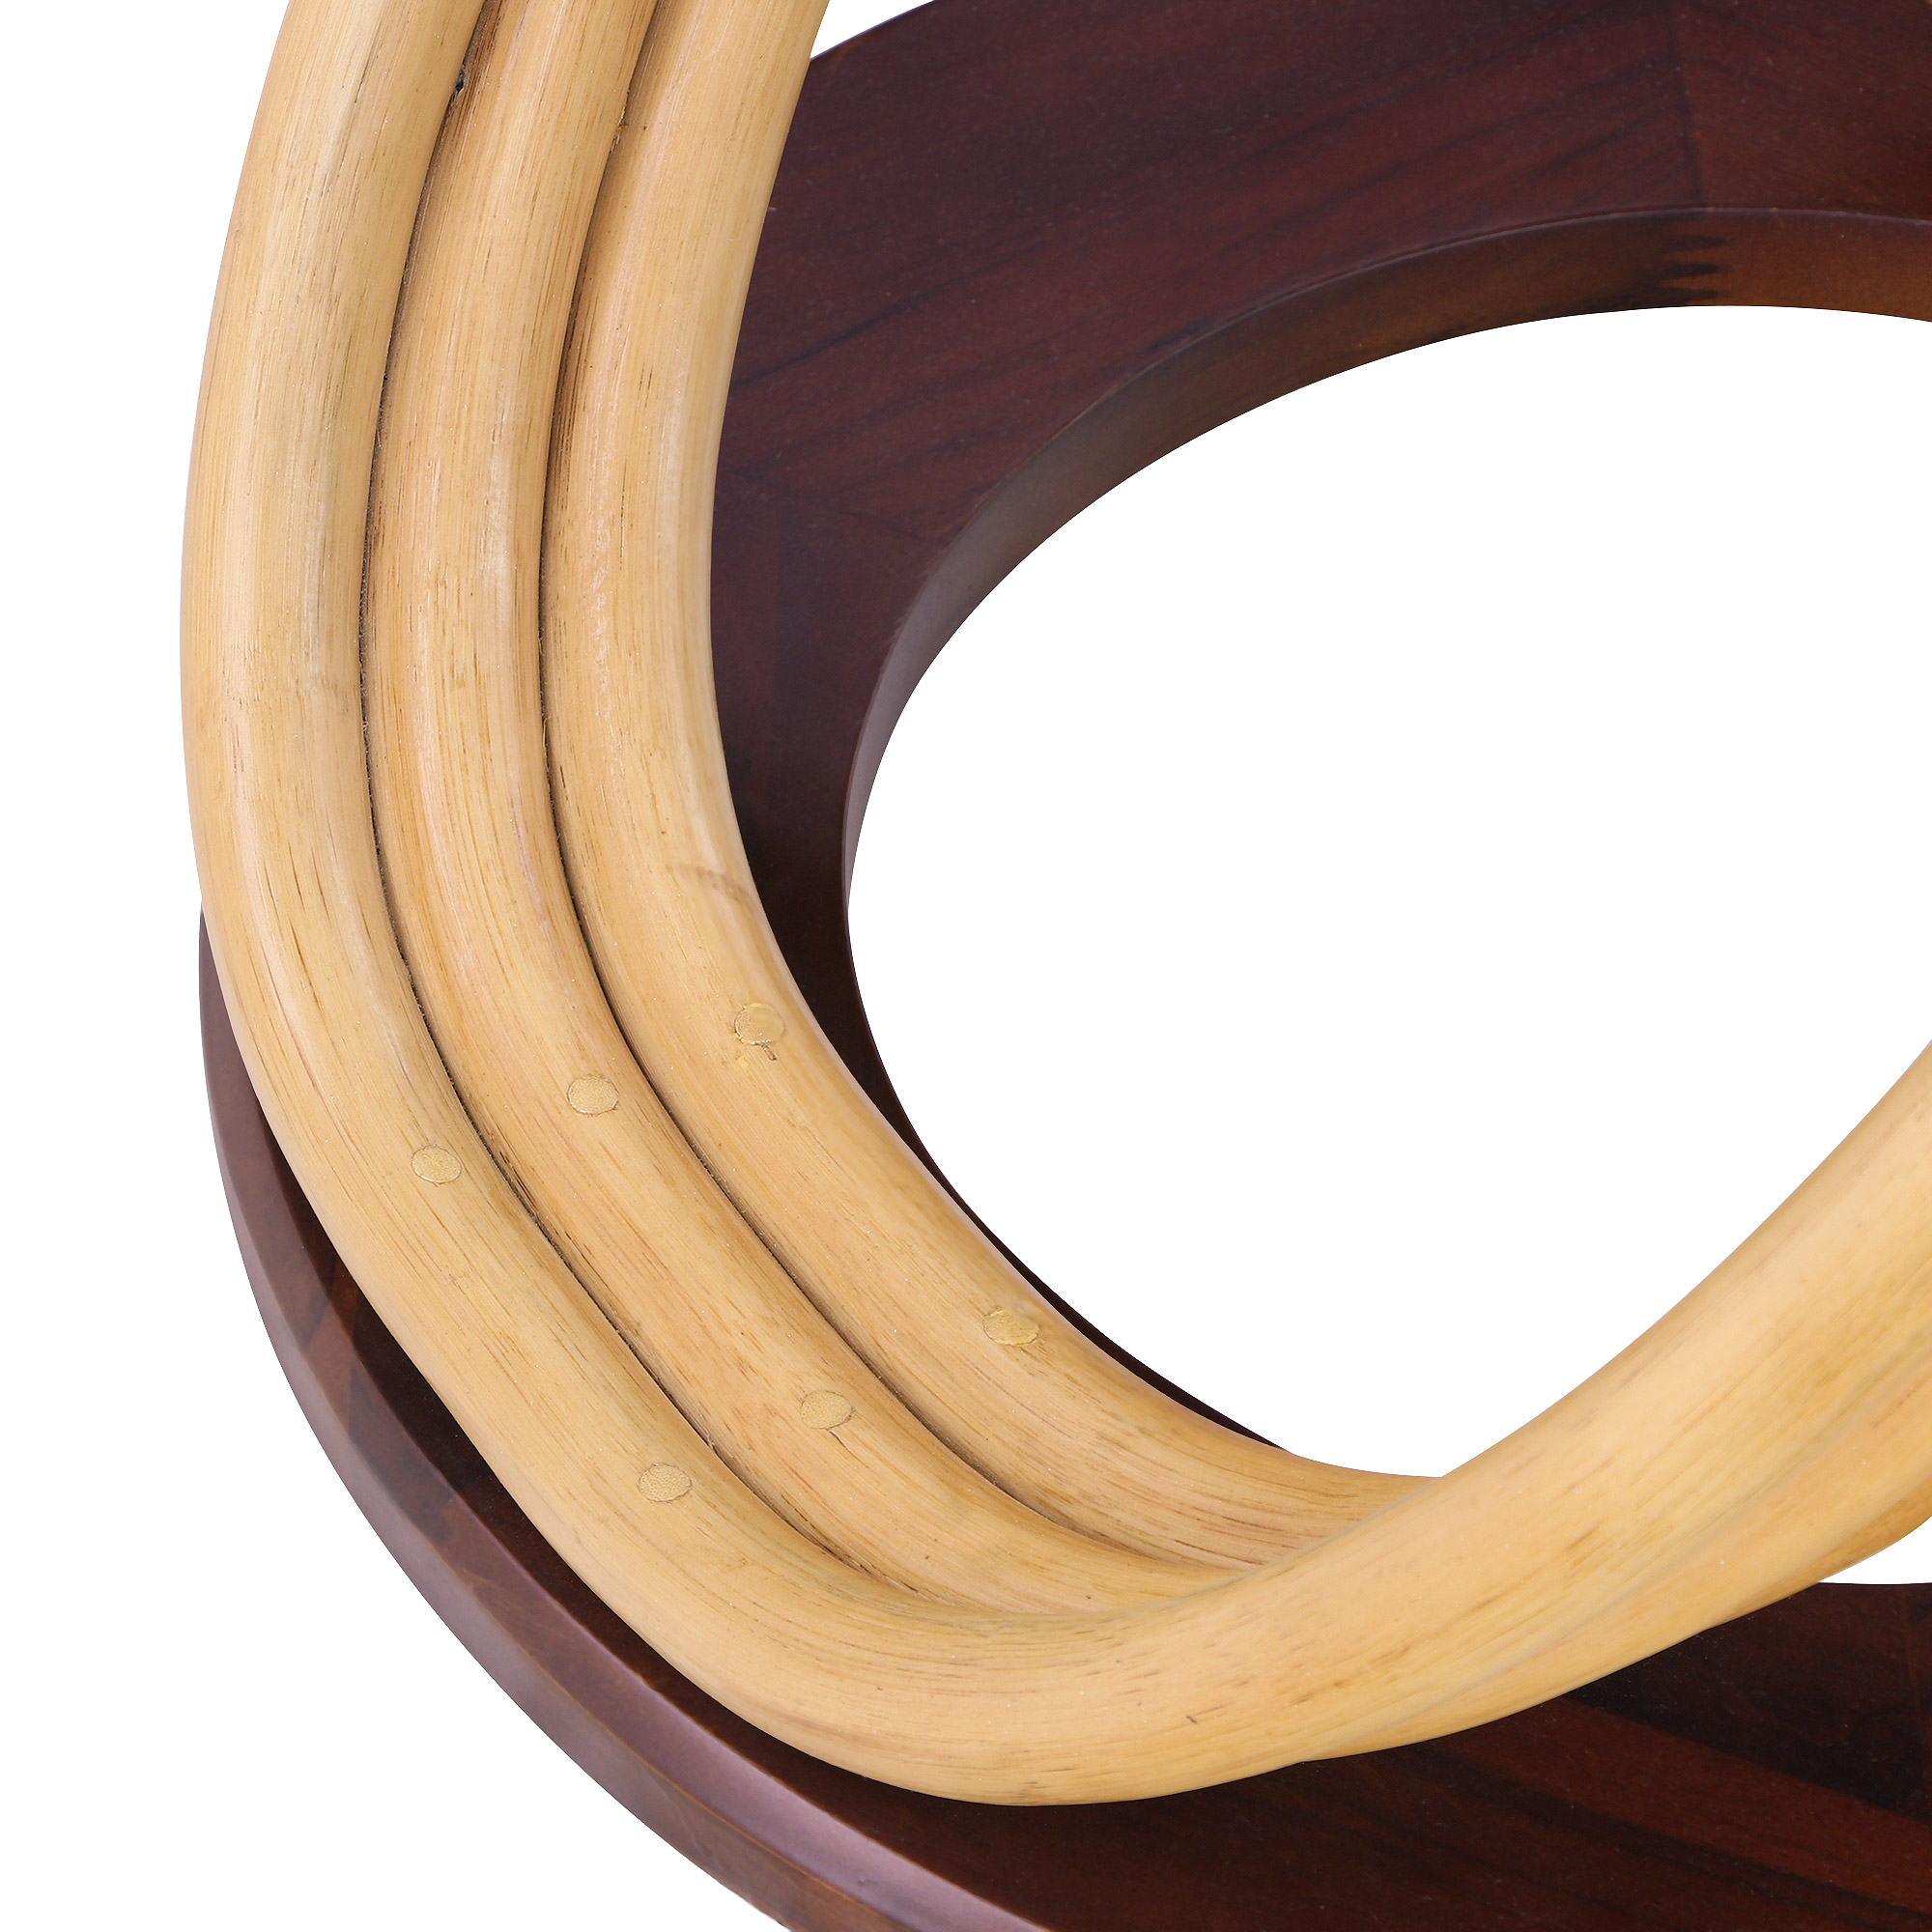 Комплект мебели Tengorattan 5 предметов из натурального ротанга, цвет коричневый, размер 89х89х74 см - фото 1